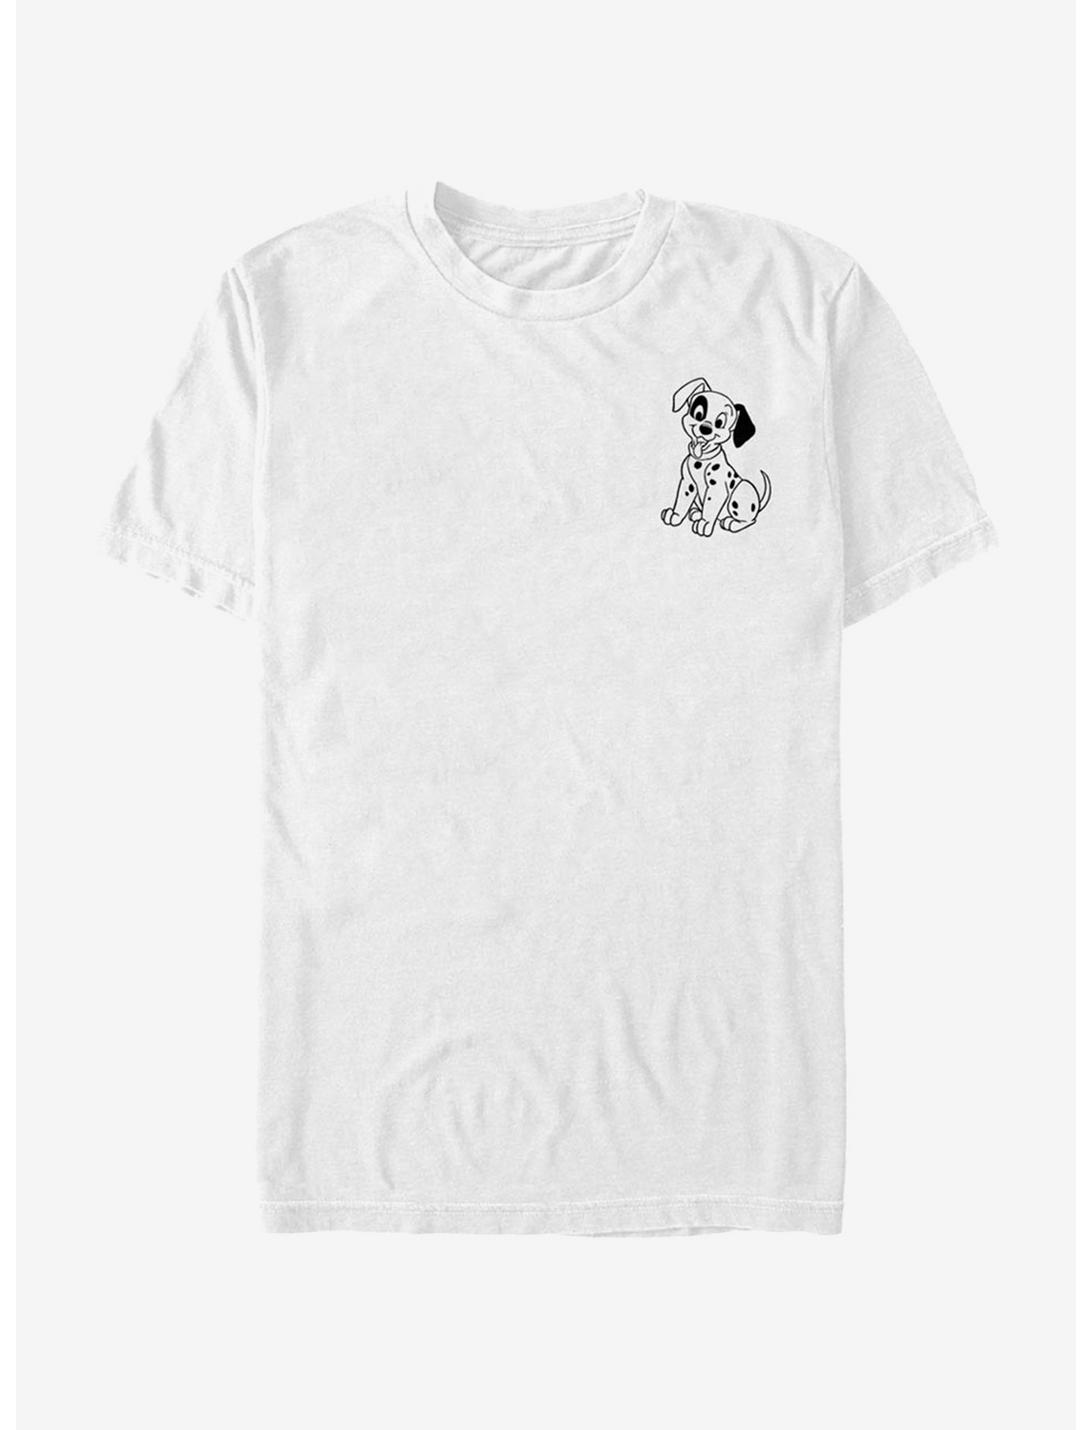 Disney 101 Dalmatians Patch Line T-Shirt, WHITE, hi-res